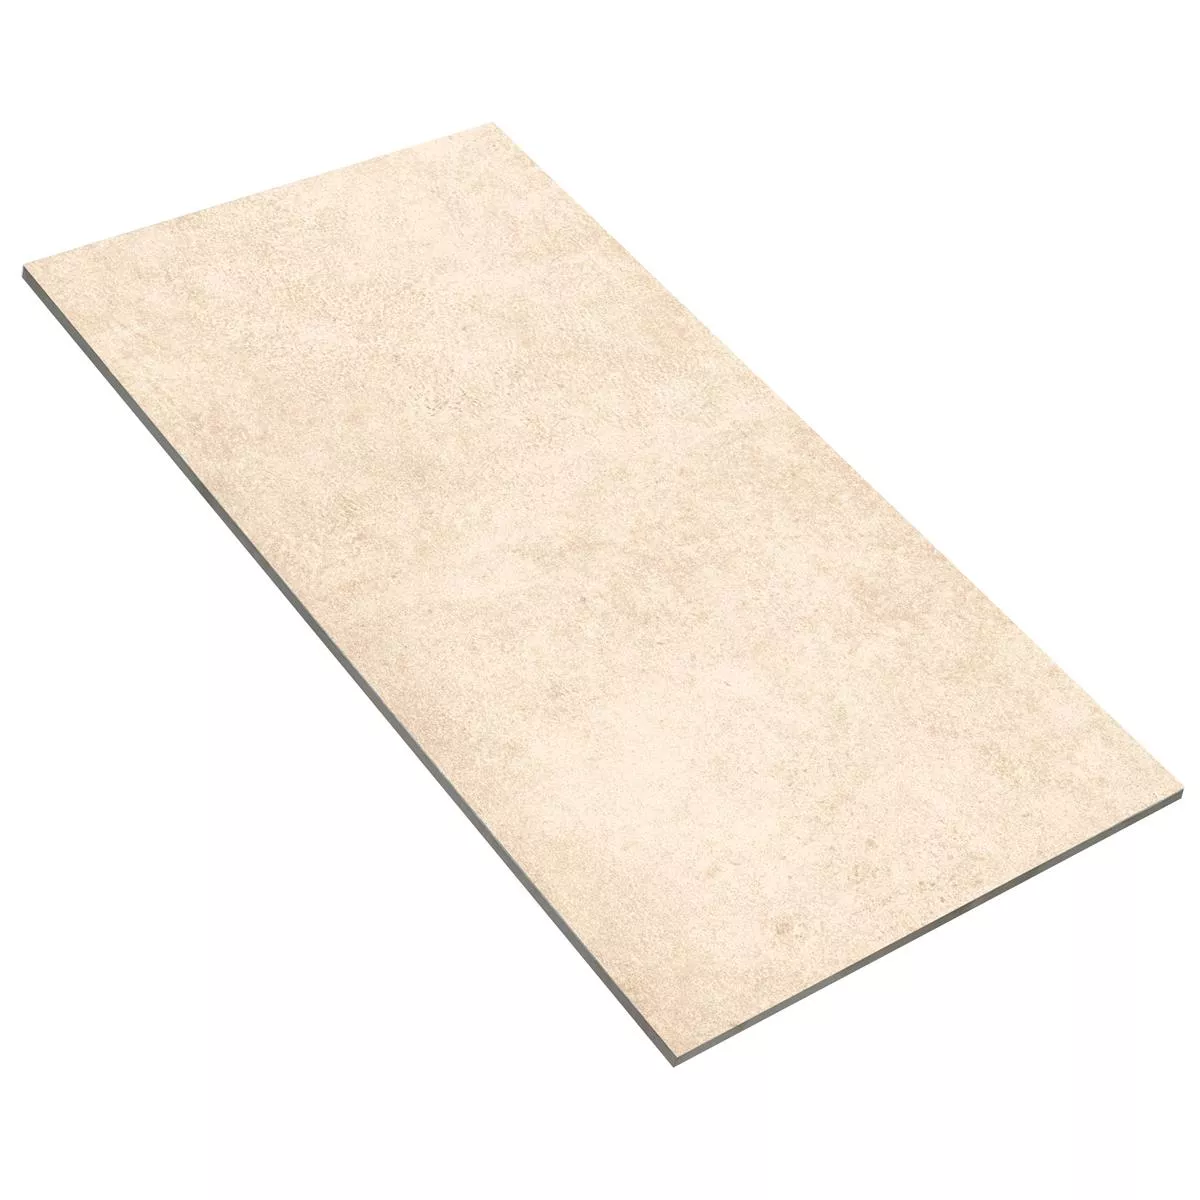 Sample Floor Tiles Stone Optic Riad Mat R9 Beige 30x60cm 